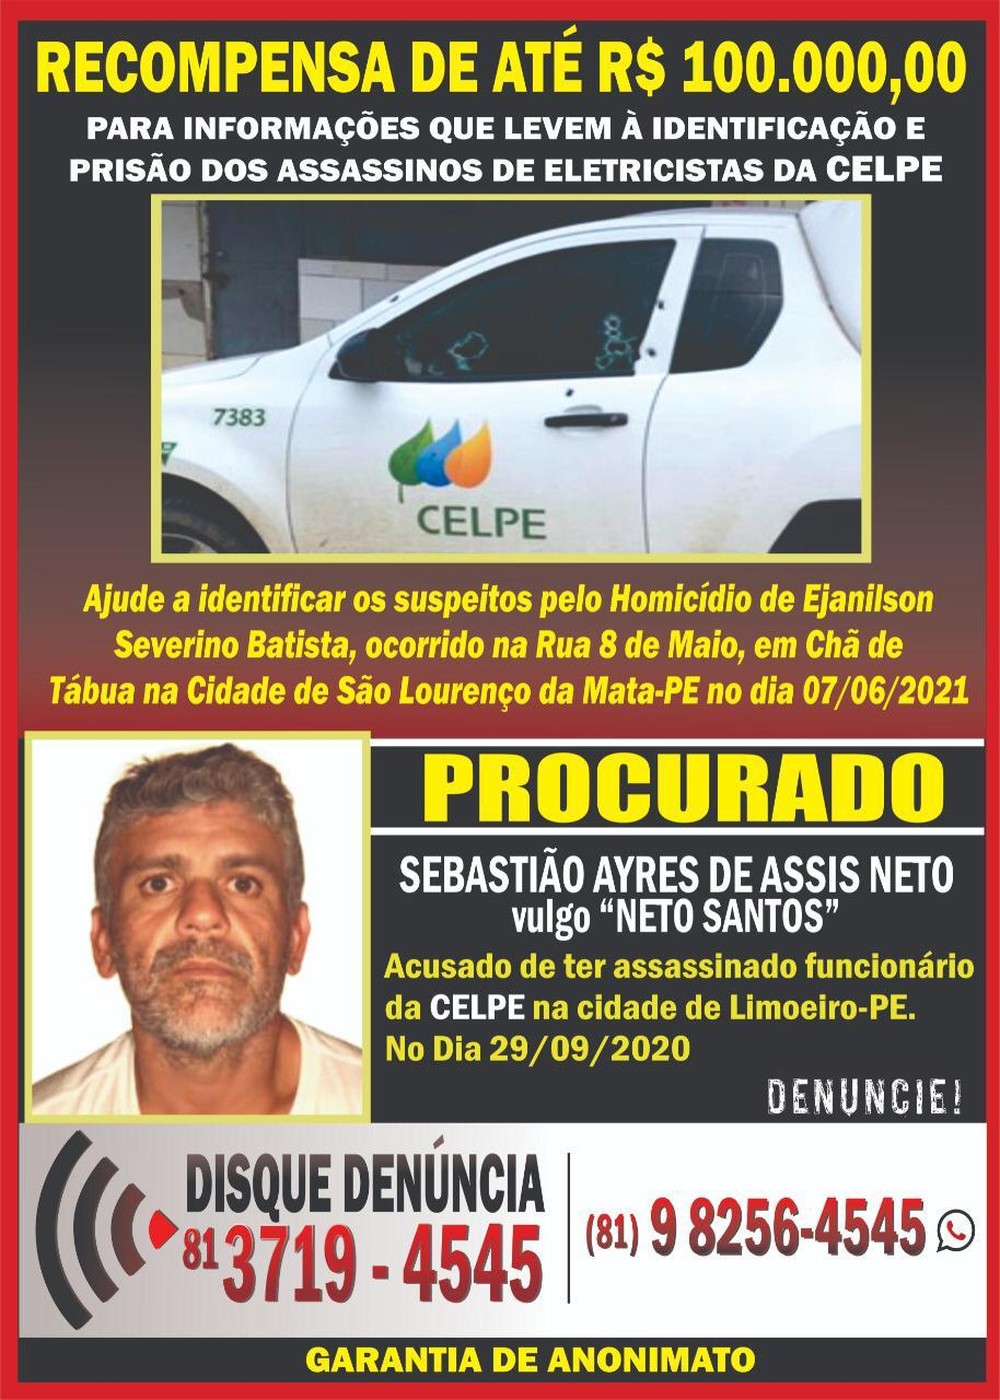 Read more about the article Disque-denúncia e Celpe oferecem recompensa de até R$ 100 mil por informações sobre assassinos de eletricistas